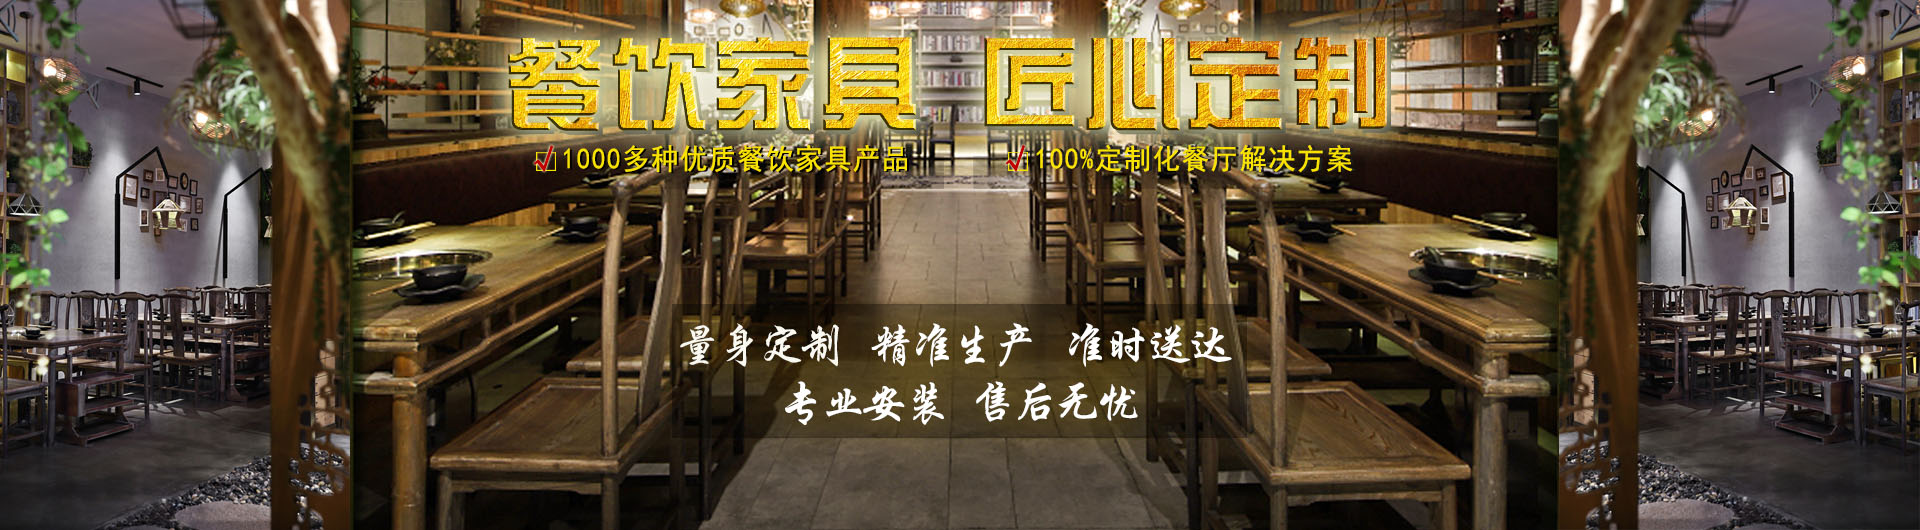 萍乡实木中餐厅桌椅图片「匠心定制」-品森家具-品森家具